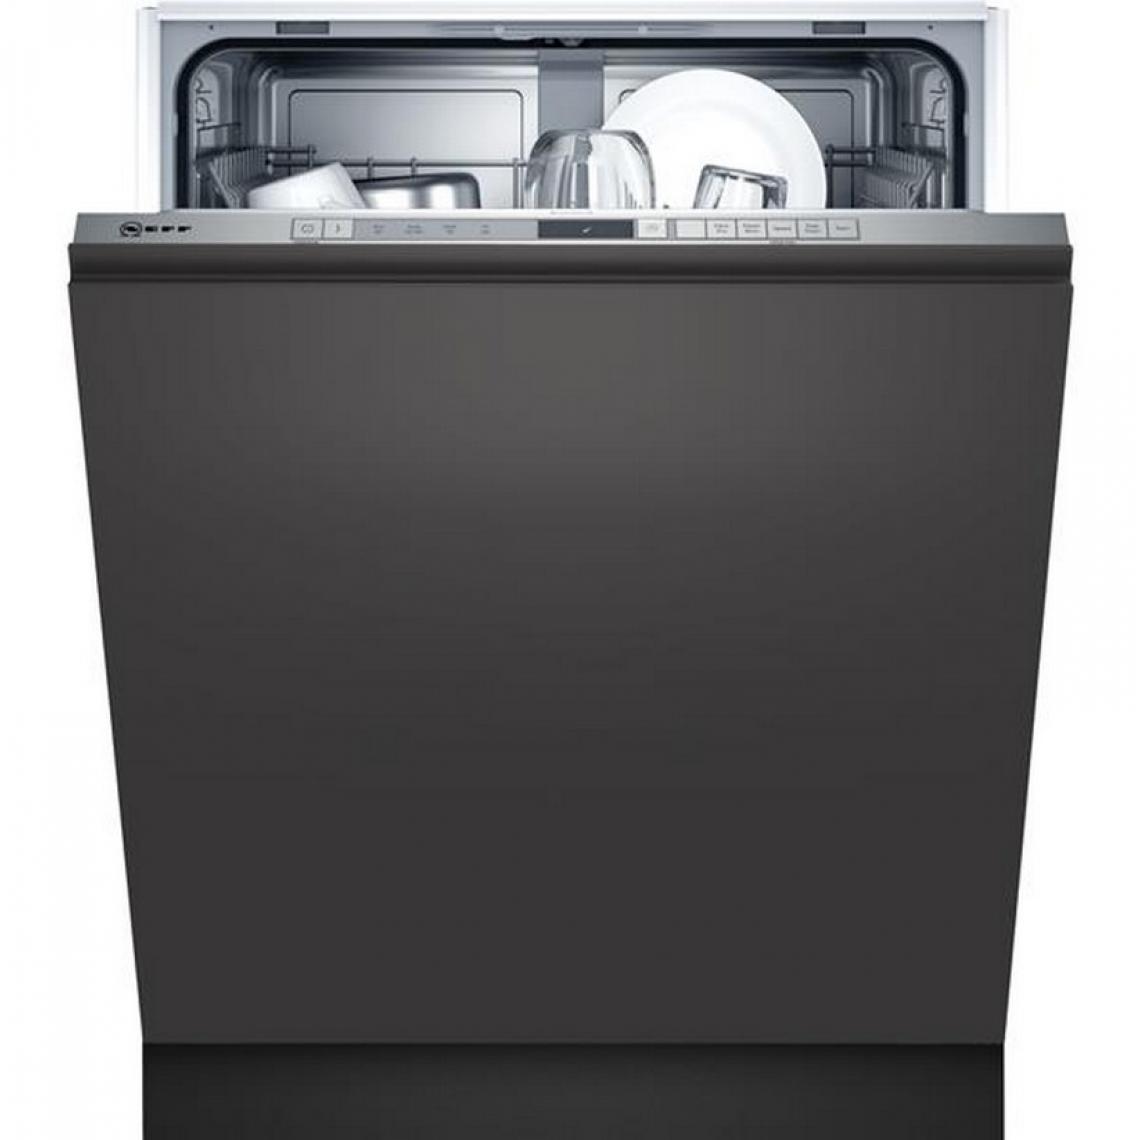 Montre Neff - neff - s353itx05e - Lave-vaisselle